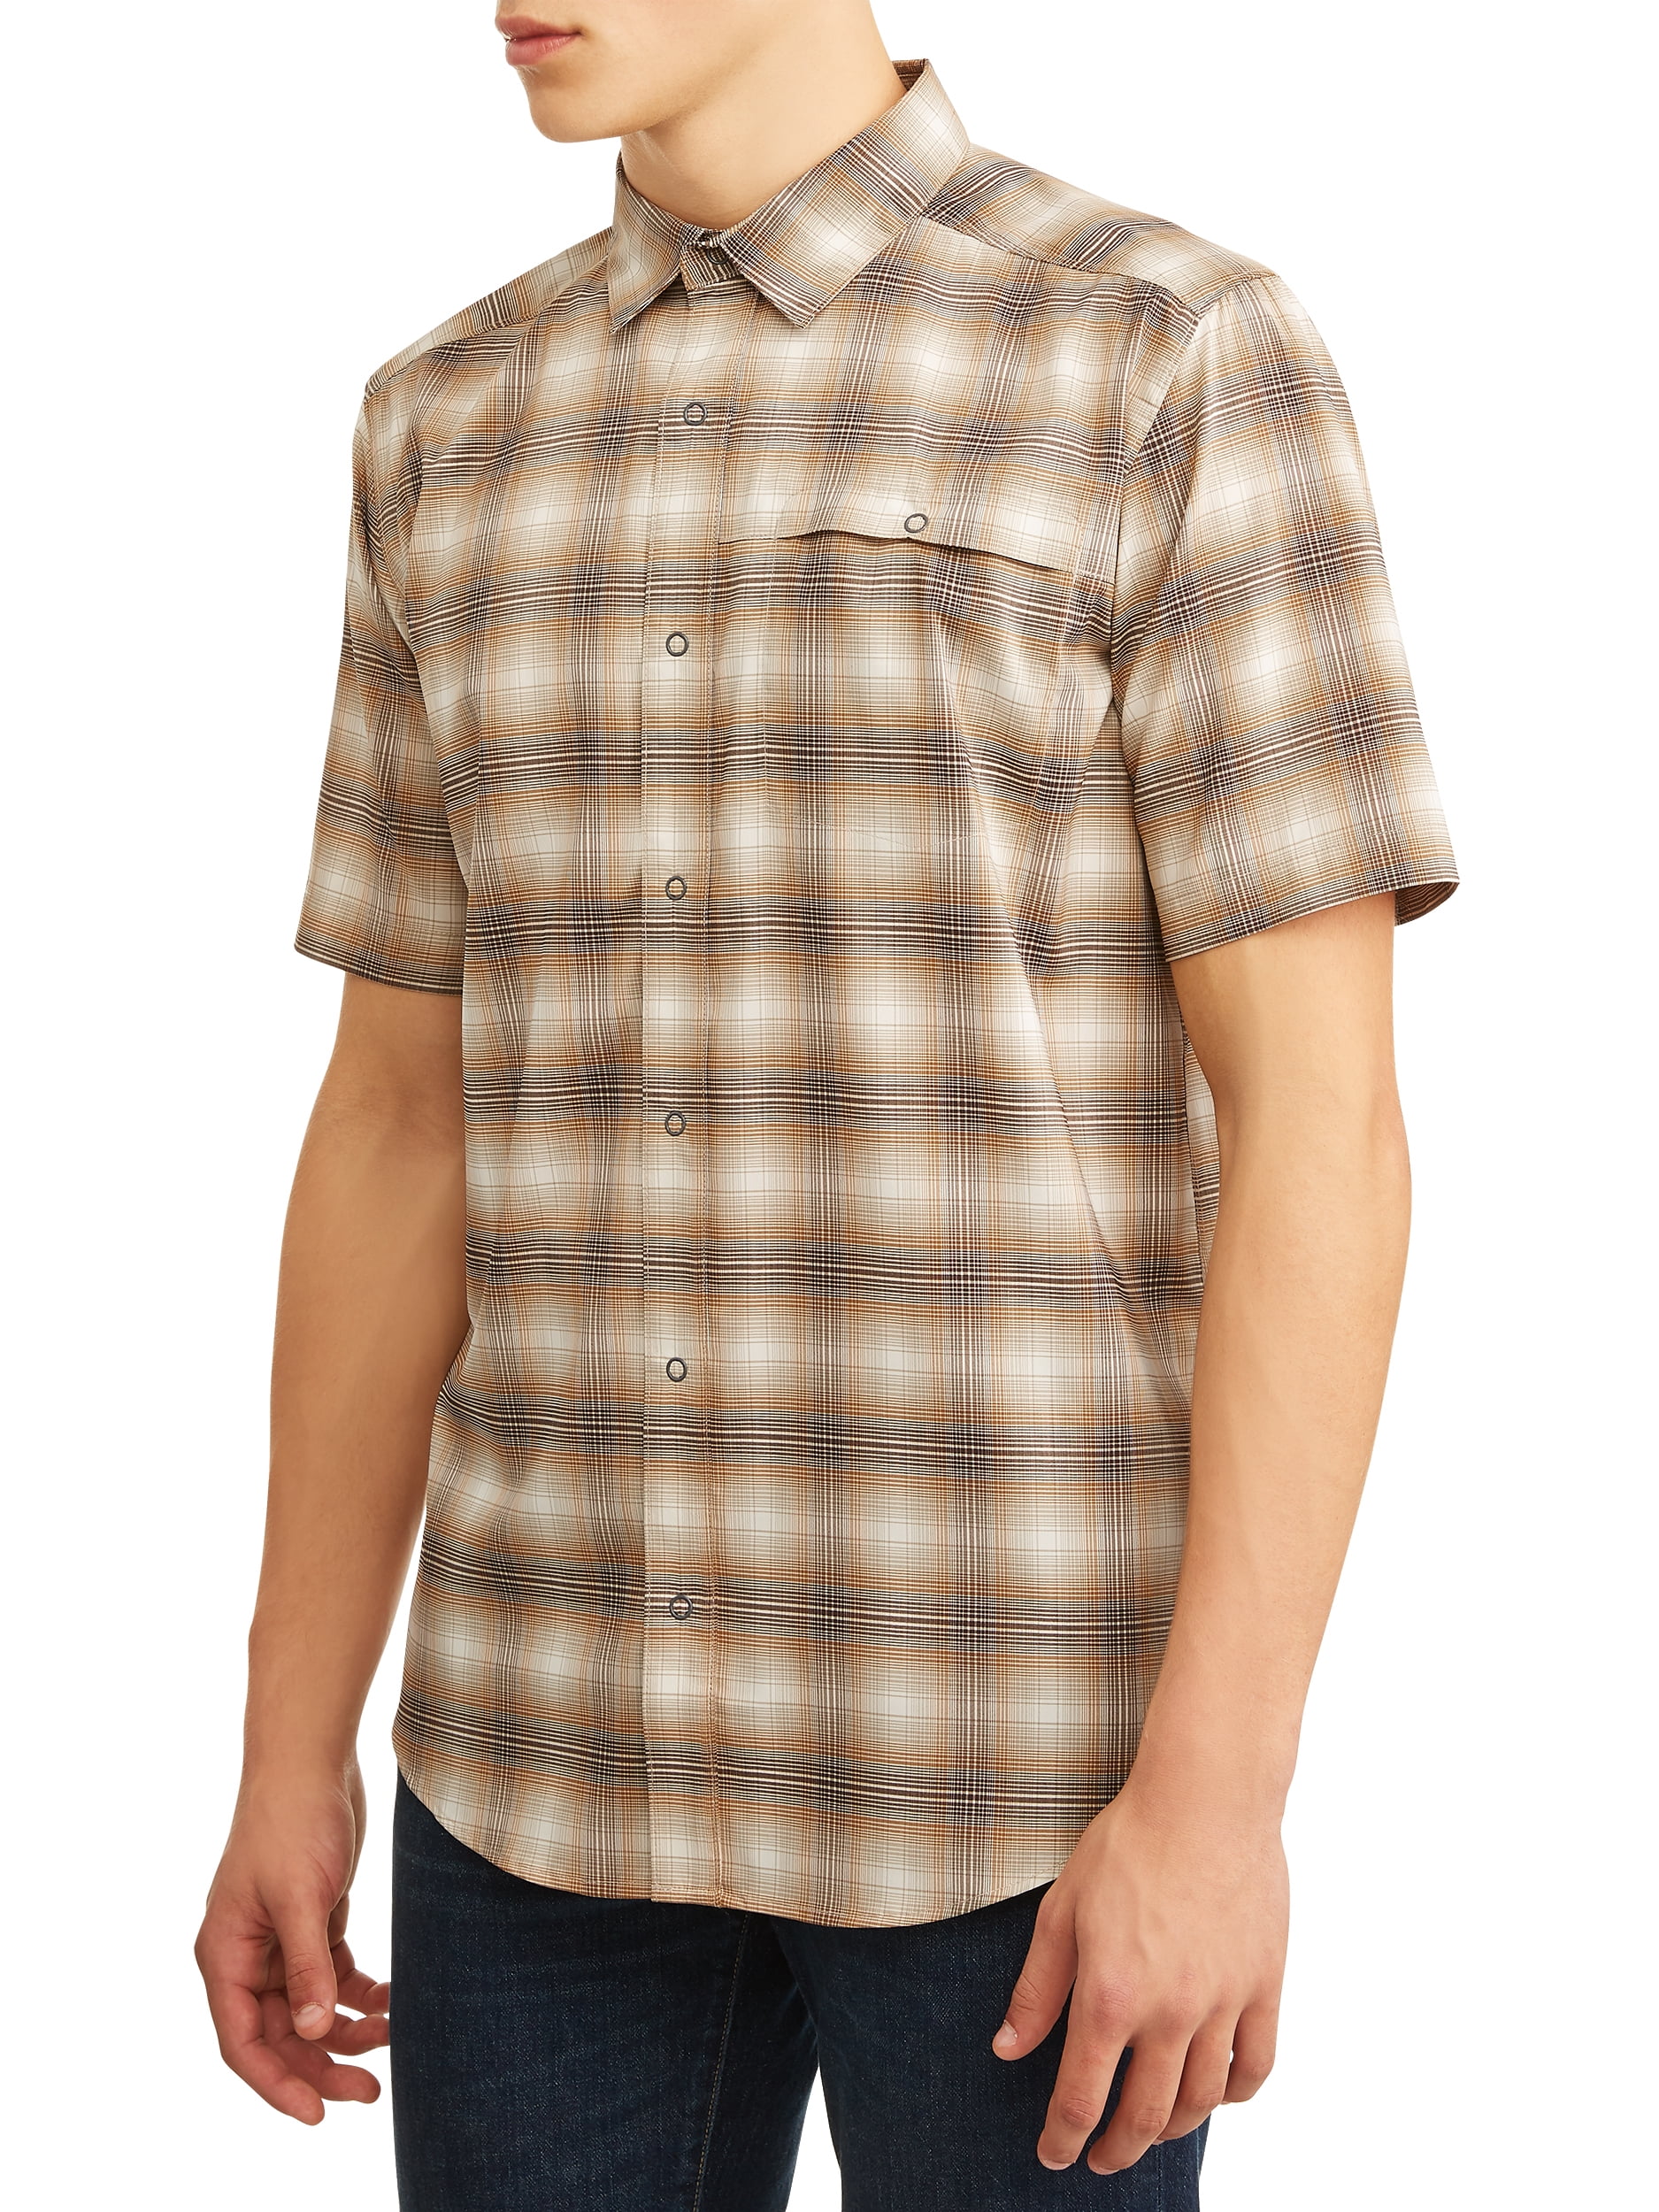 Swiss Tech Men's Short Sleeve Outdoor Shirt - Walmart.com